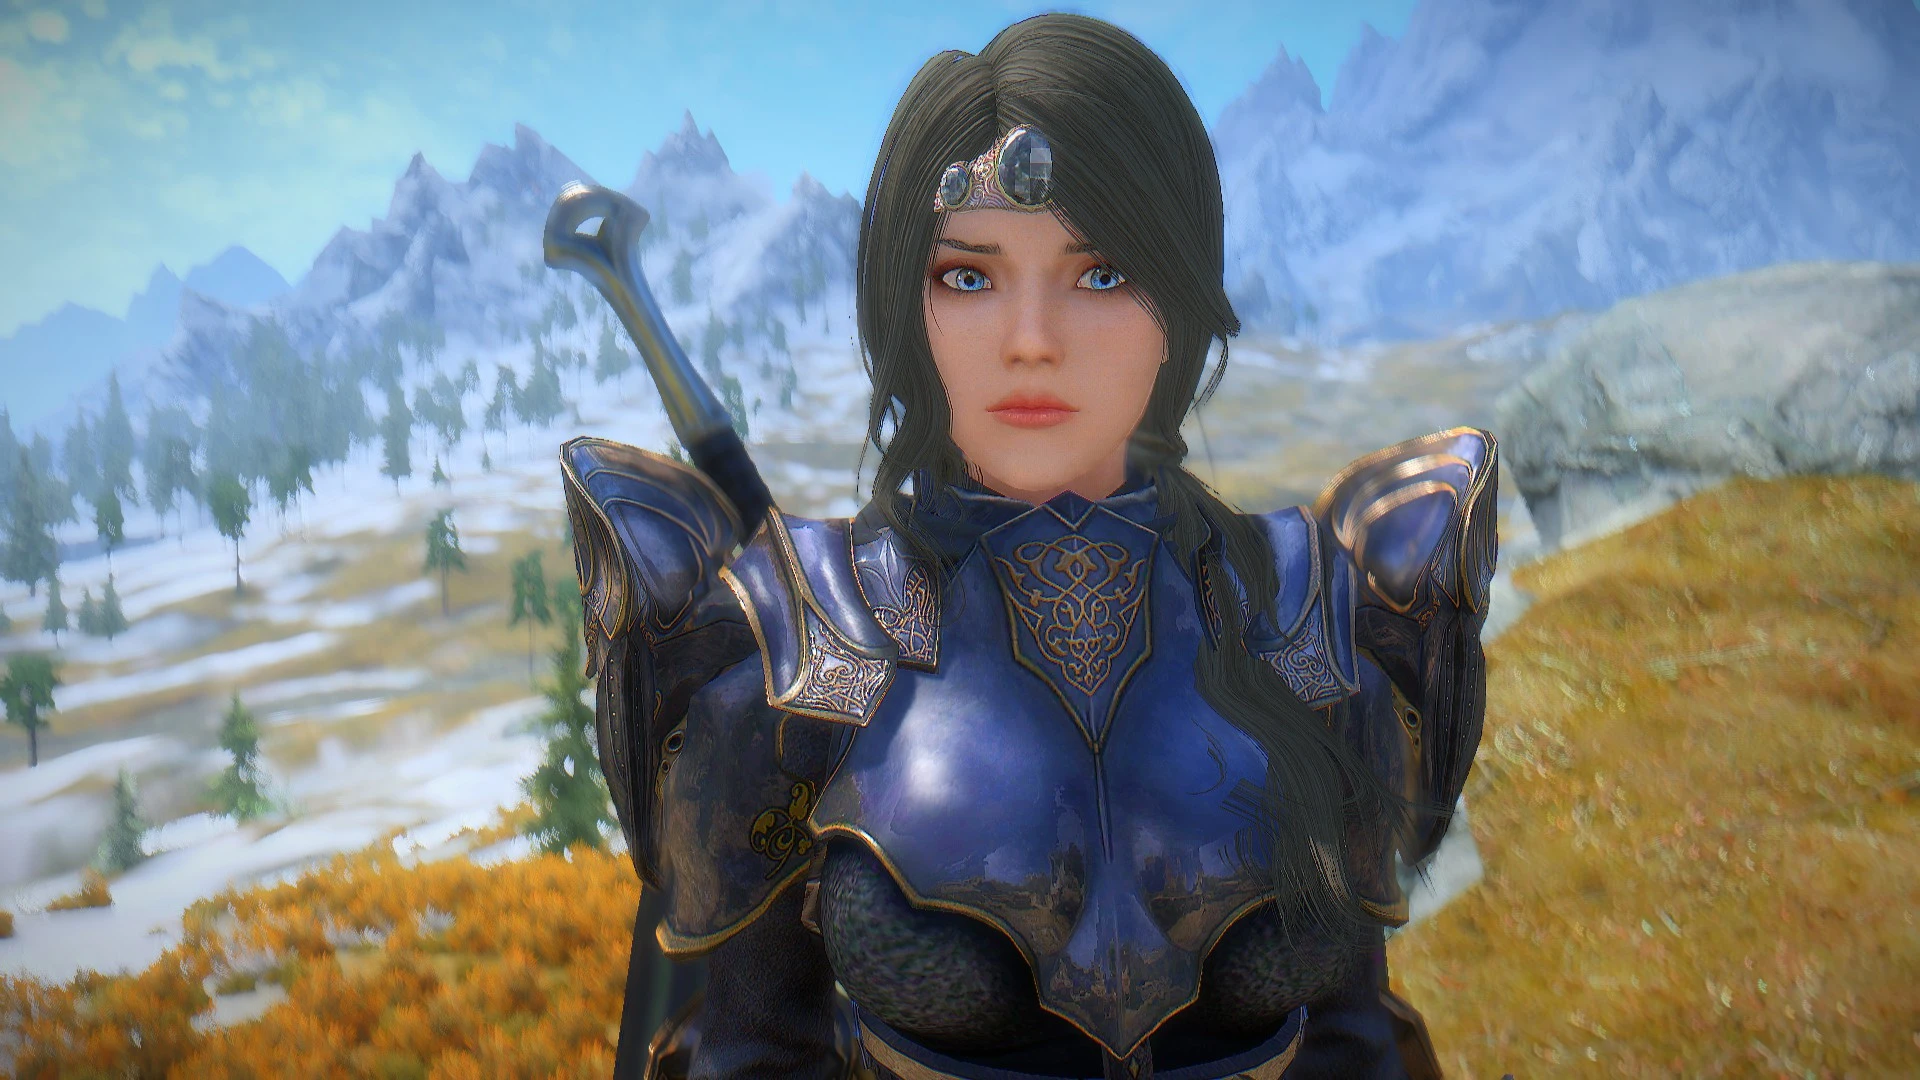 Ebony Valkyrie armor at Skyrim Nexus - Mods and Community. 